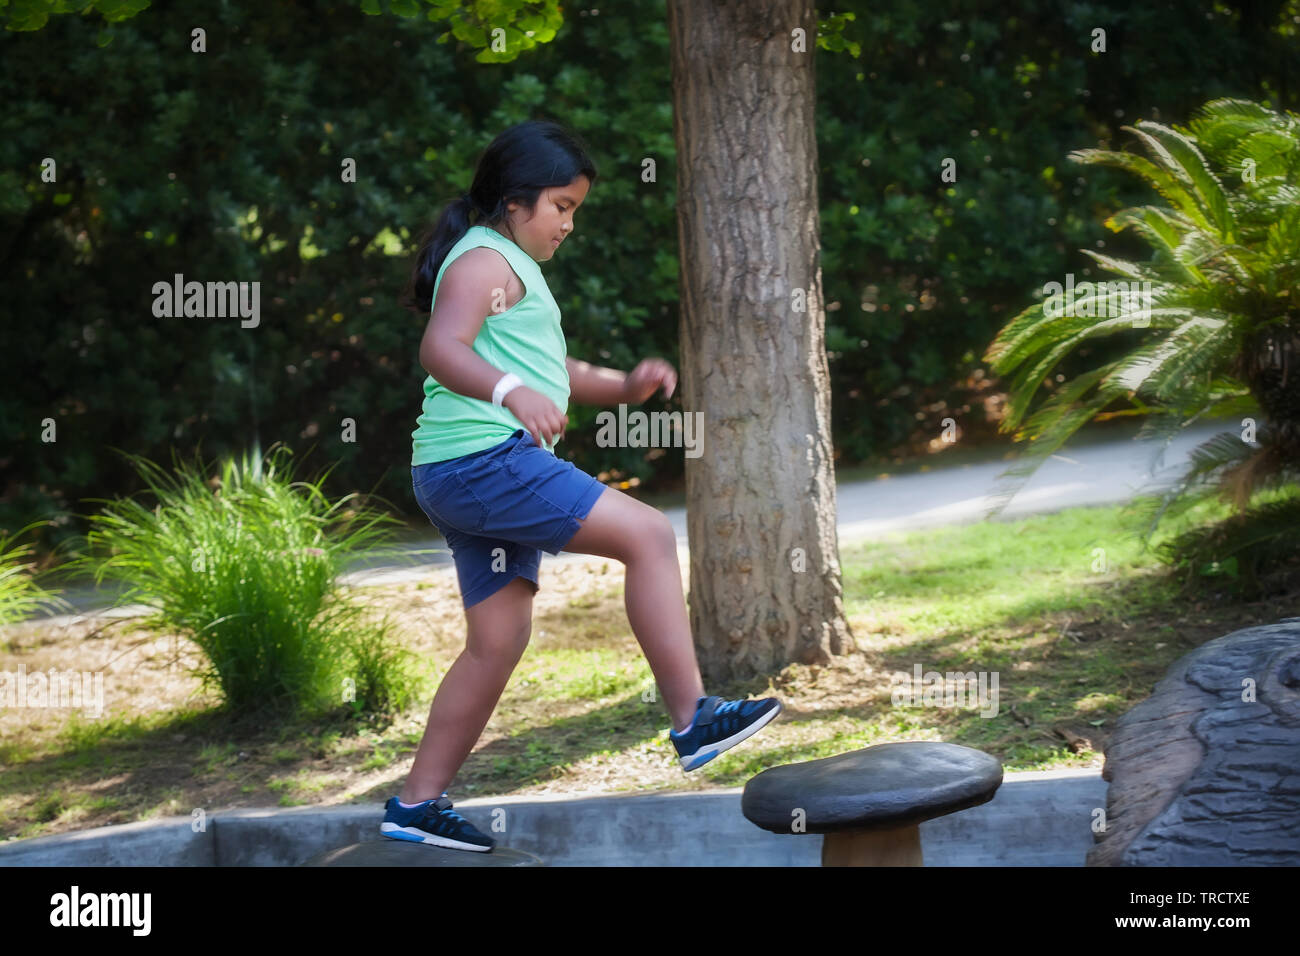 Pre-teen ragazza salta da una fase all'altra in corrispondenza di un parco giochi per bambini, fare attività fisica che si sviluppa il suo senso di equilibrio. Foto Stock